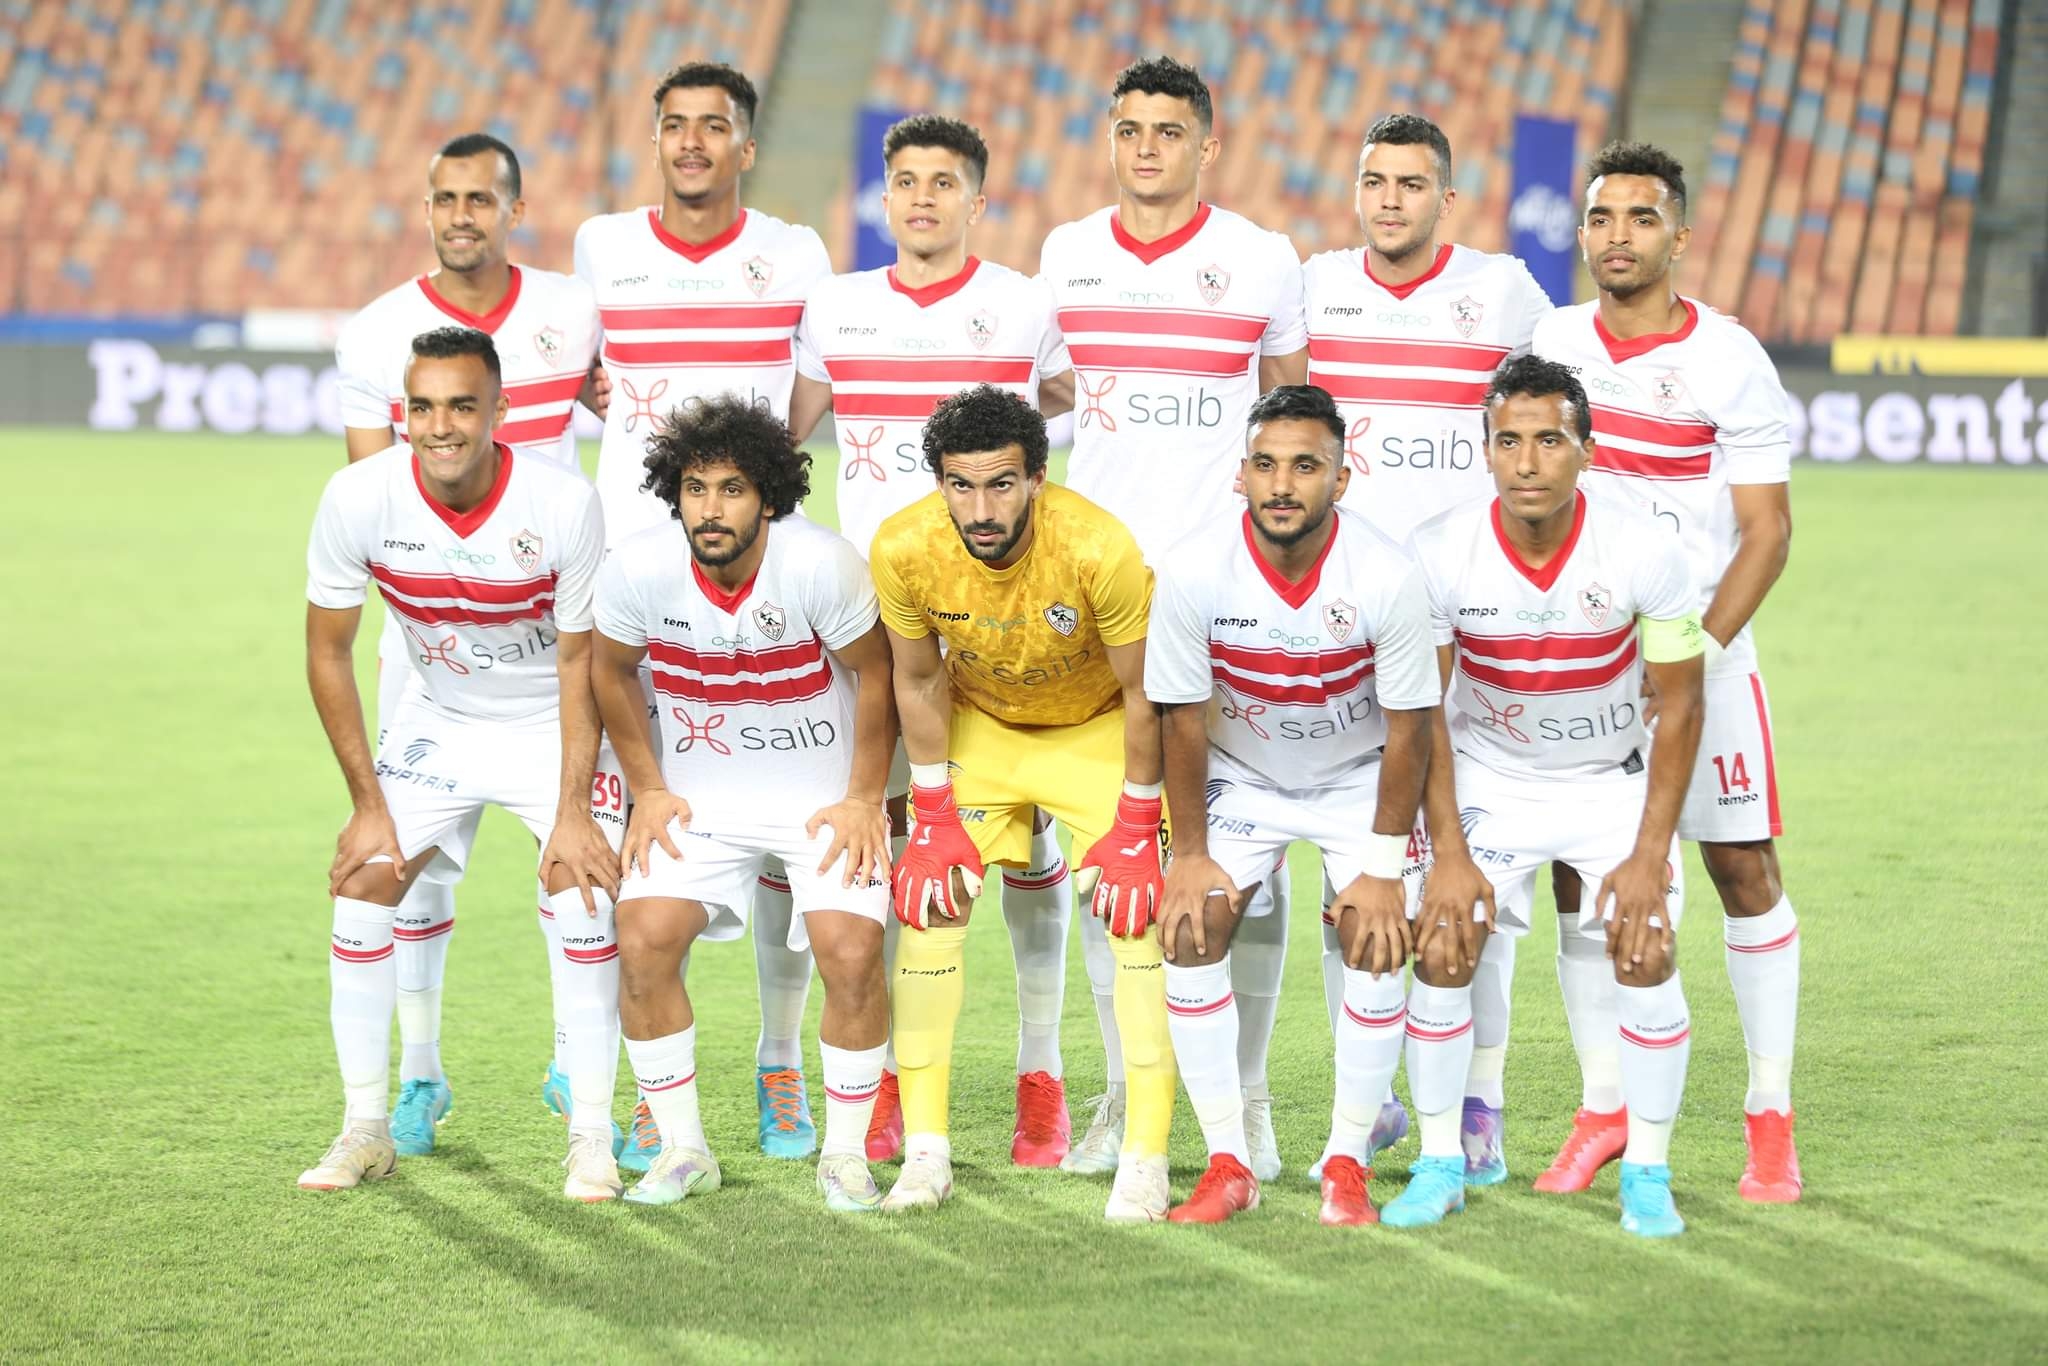 لقاء الزمالك والداخلية فى كأس مصر .فيريرا يعلن تشكيل الزمالك بثلاث مفاجأت . النجوم الكبار أحتياطي 